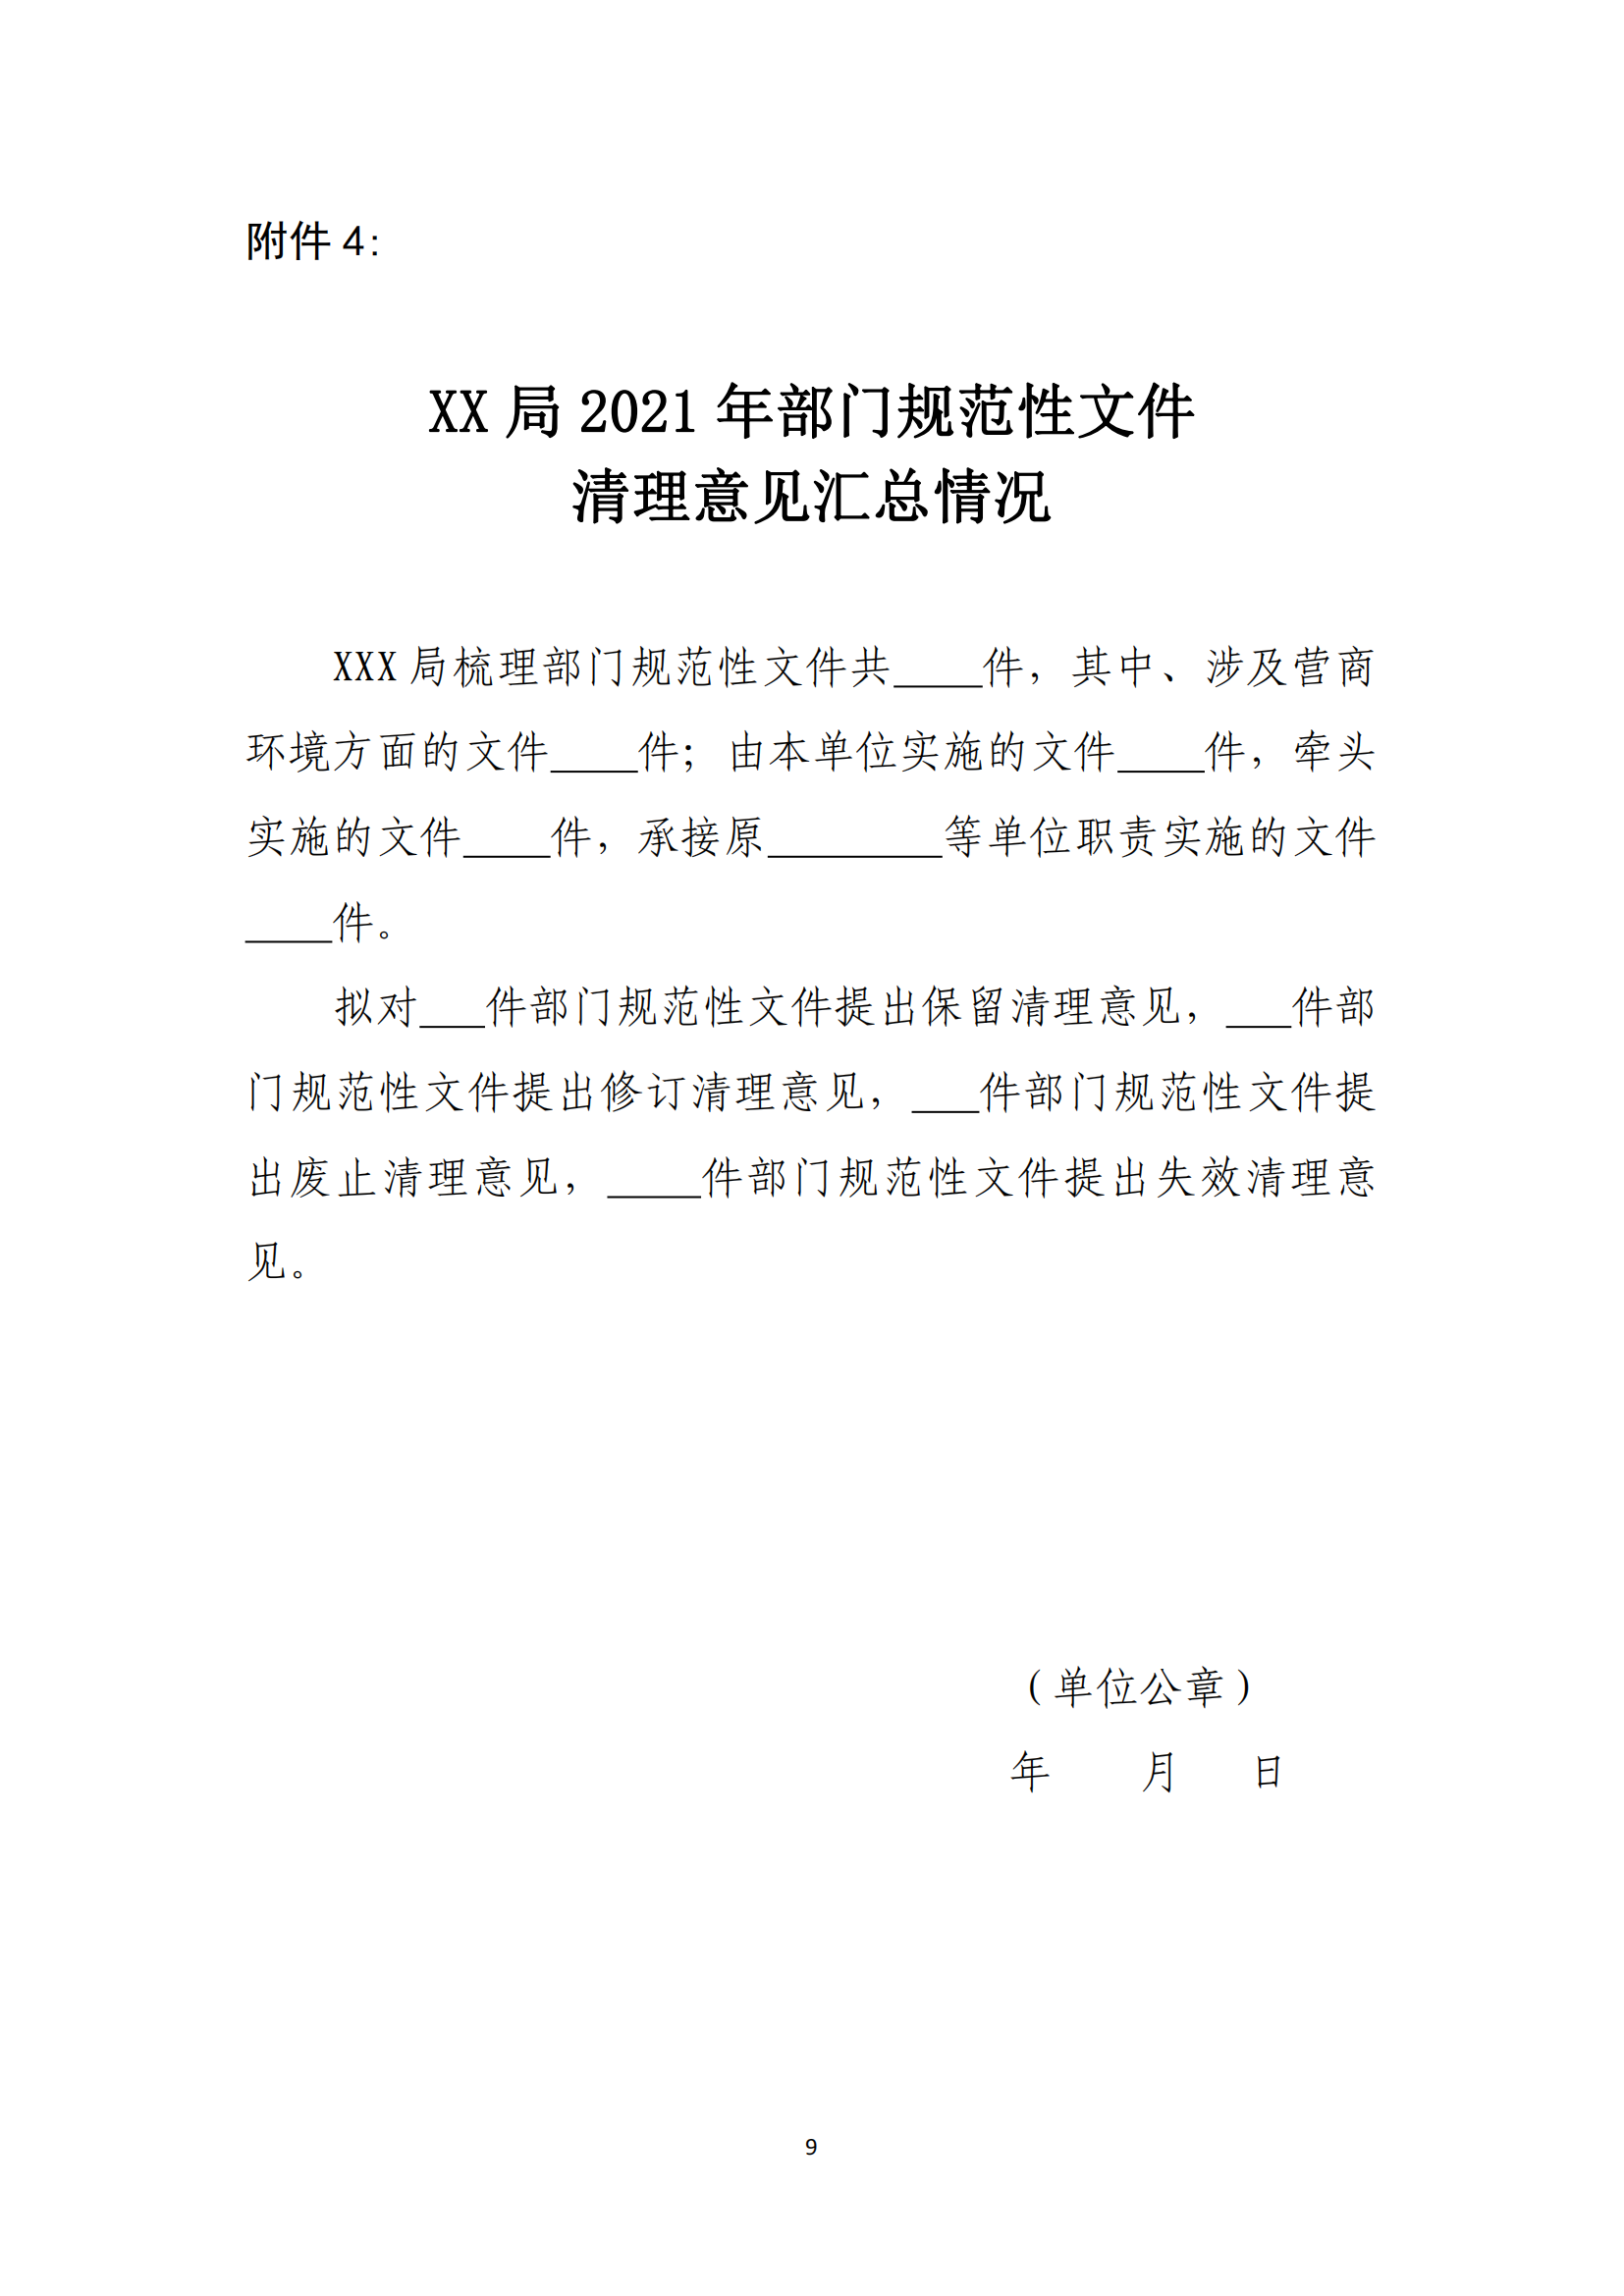 湛江市人民政府办公室关于开展2021年全市行政规范性文件清